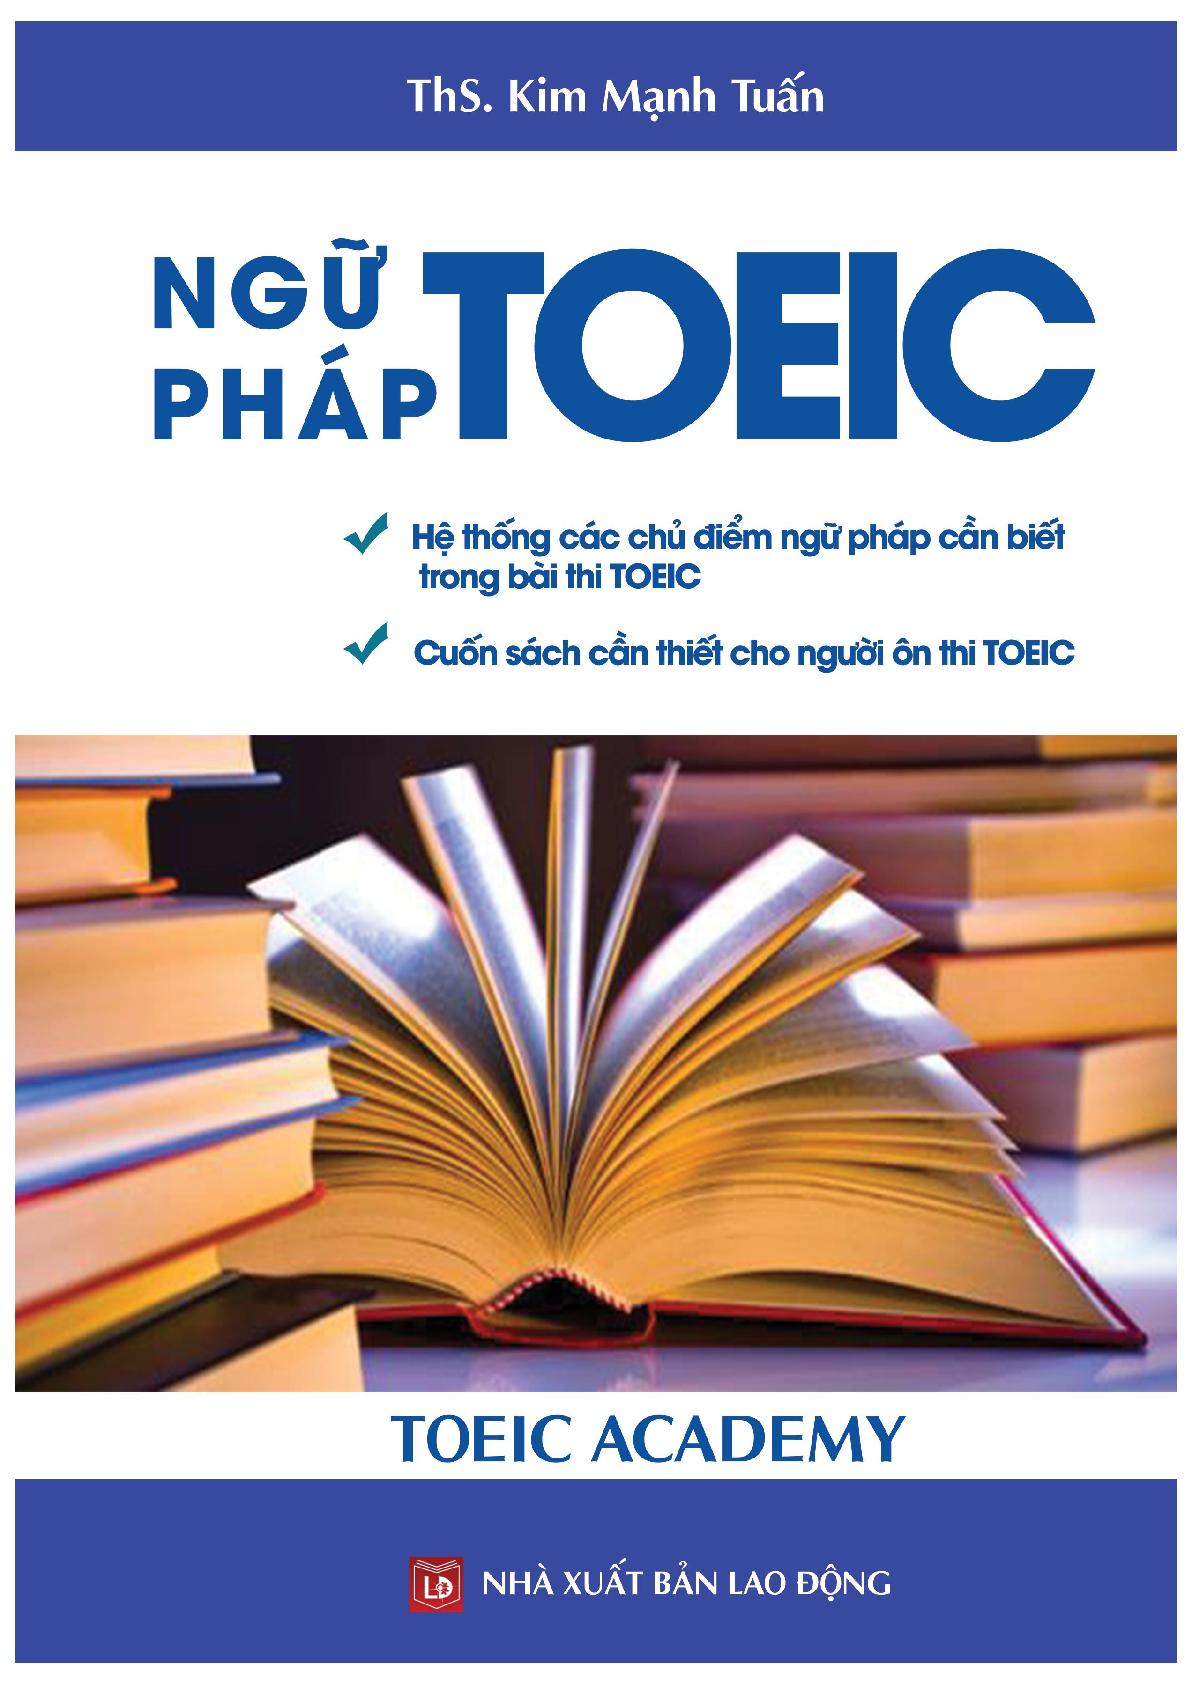 Tổng hợp ngữ pháp Tiếng Anh ôn thi TOEIC | Hệ thống các chủ điểm ngữ pháp cần biết trong bài thi TOEIC kèm đáp án